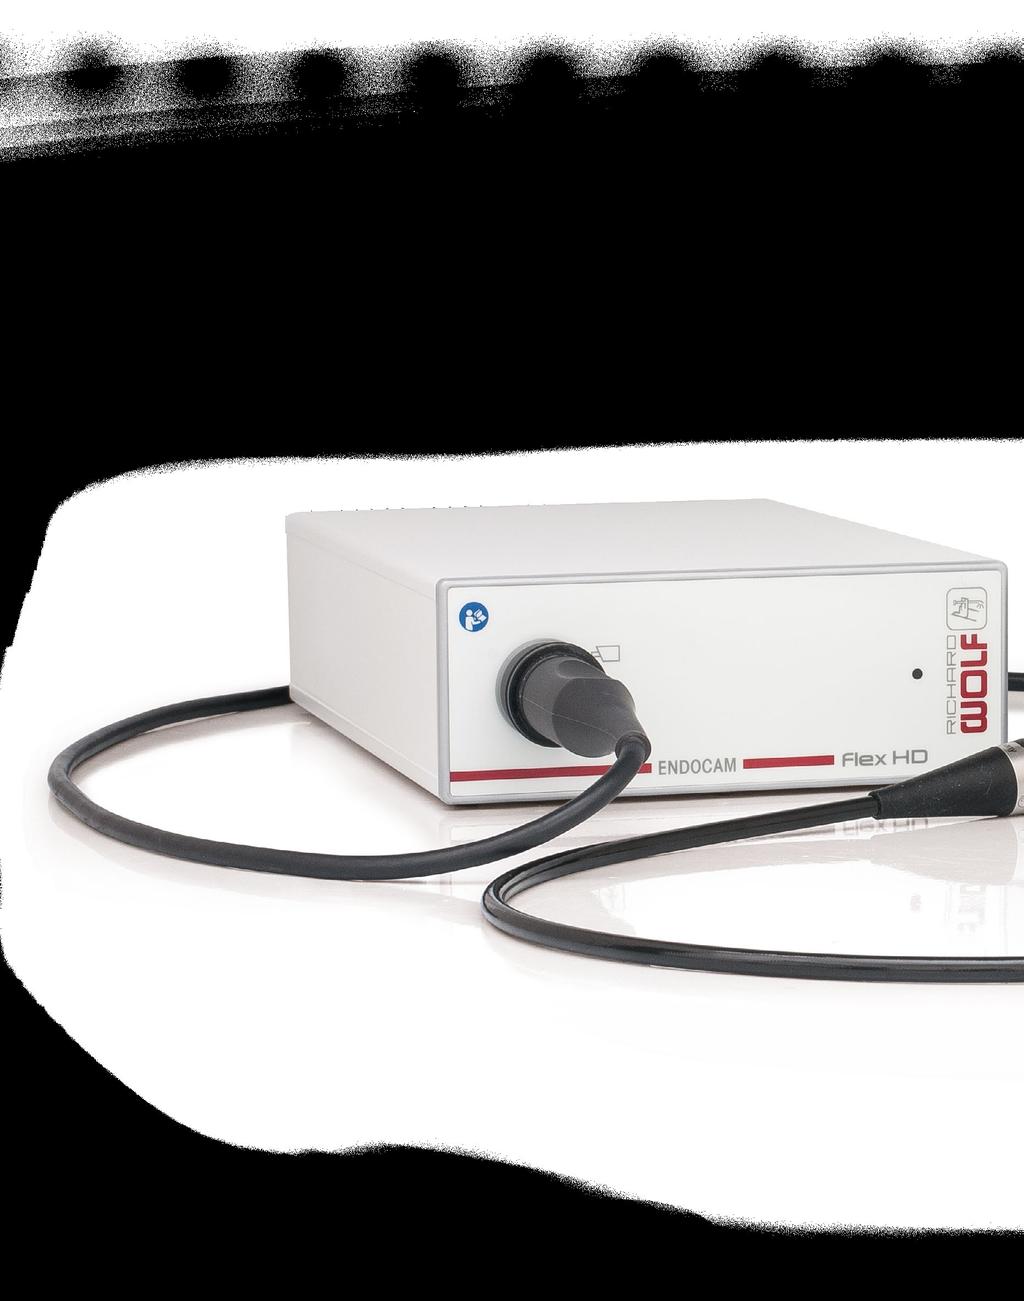 @Pneumologia / Medicina Intensiva Pneumologia Para a pneumologia, o conceito ENDOCAM Flex HD oferece um pacote completo que economiza espaço e custos